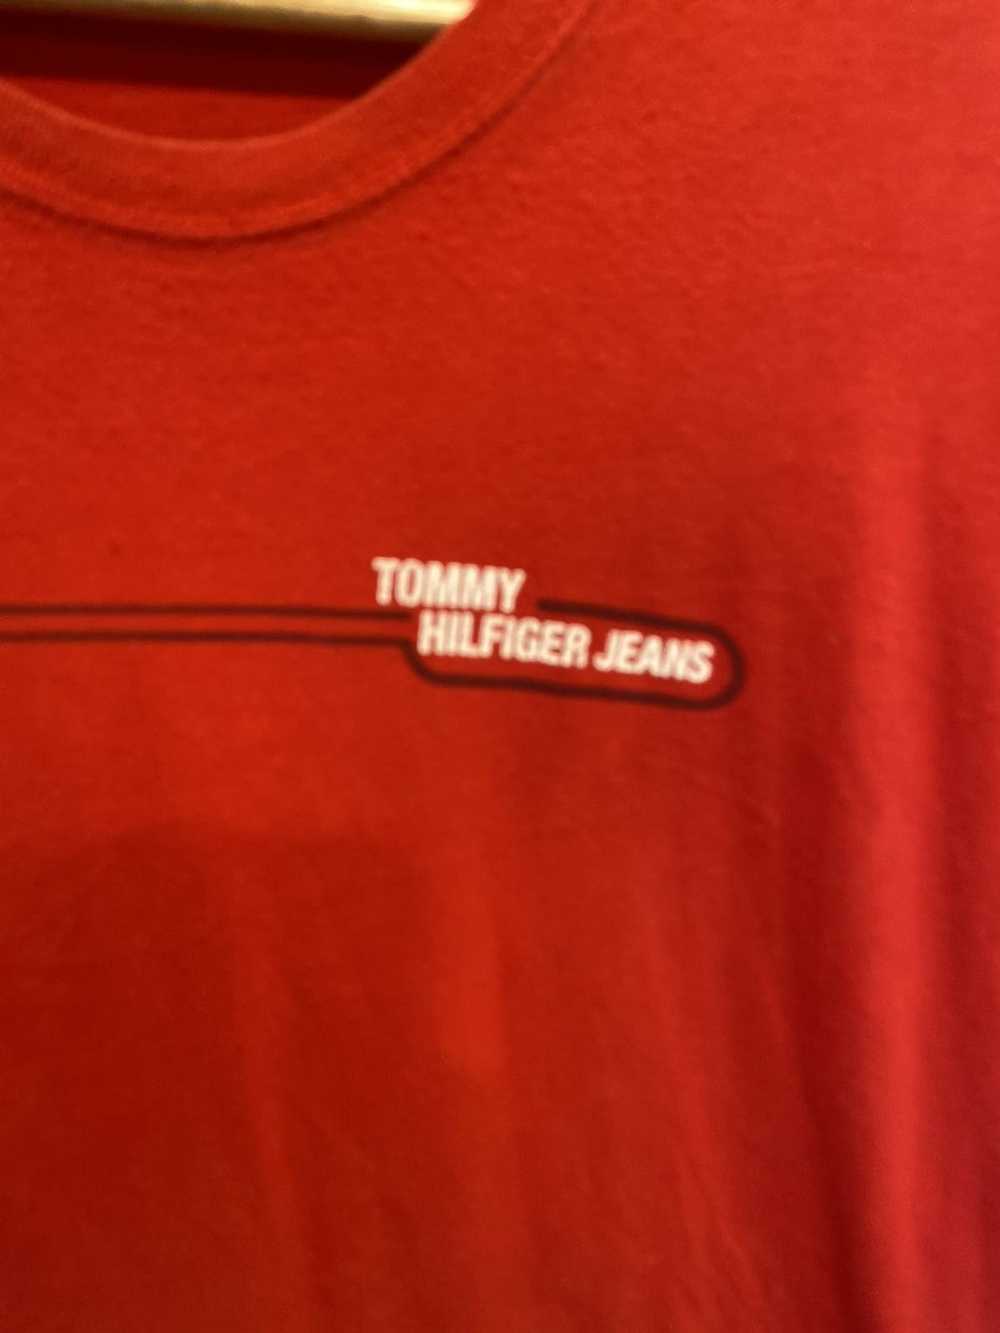 Tommy Hilfiger Vintage tommy hilfiger tee red xl - image 4